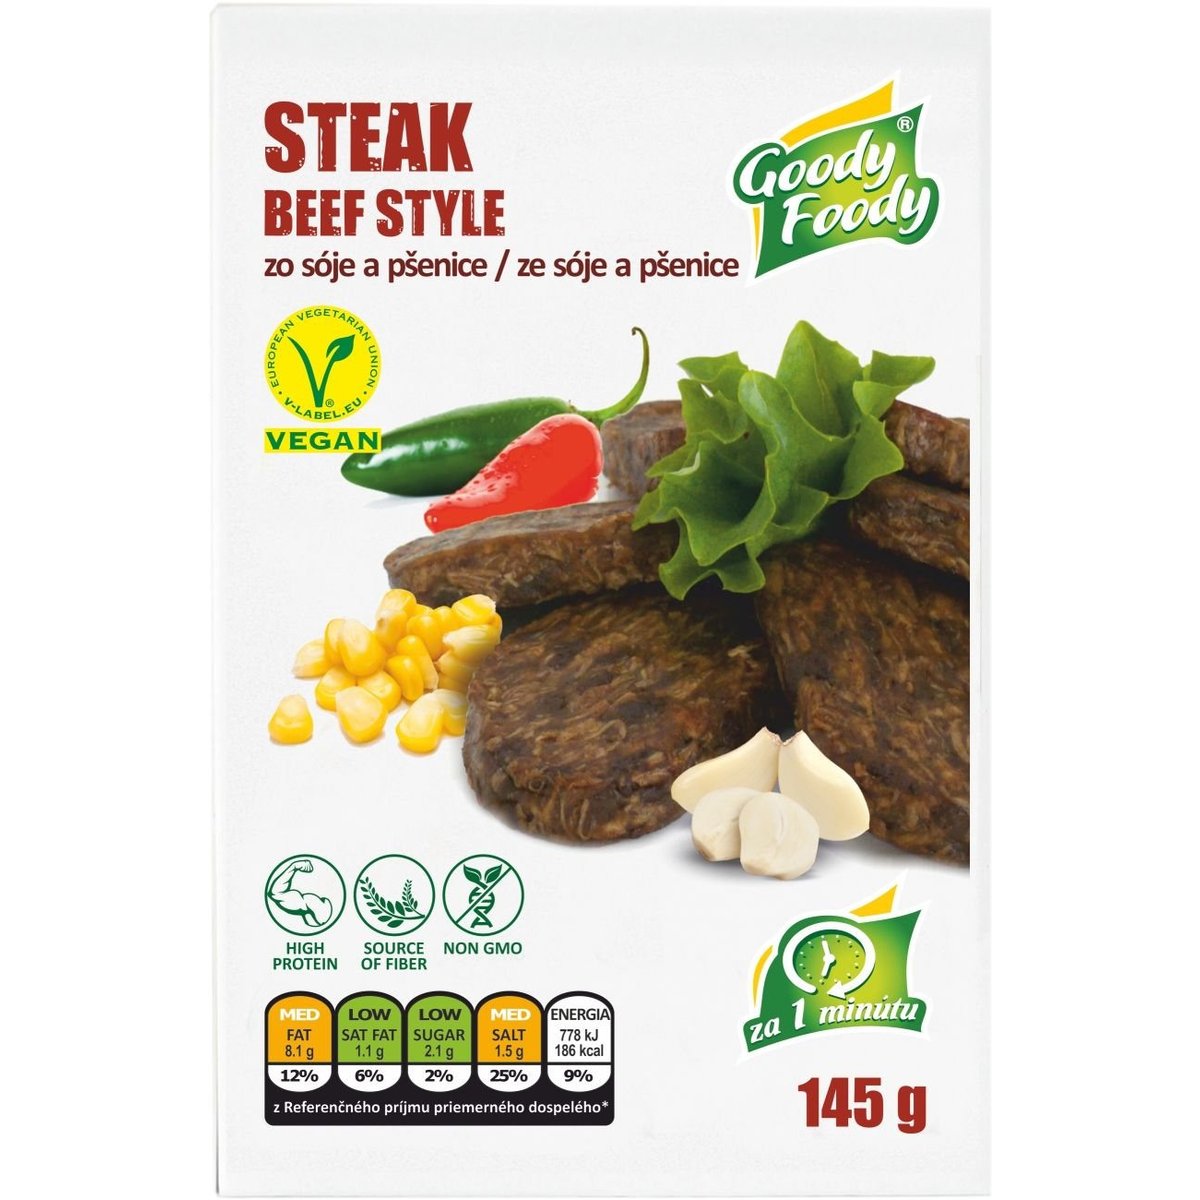 Goody Foody Vegan steak beef style